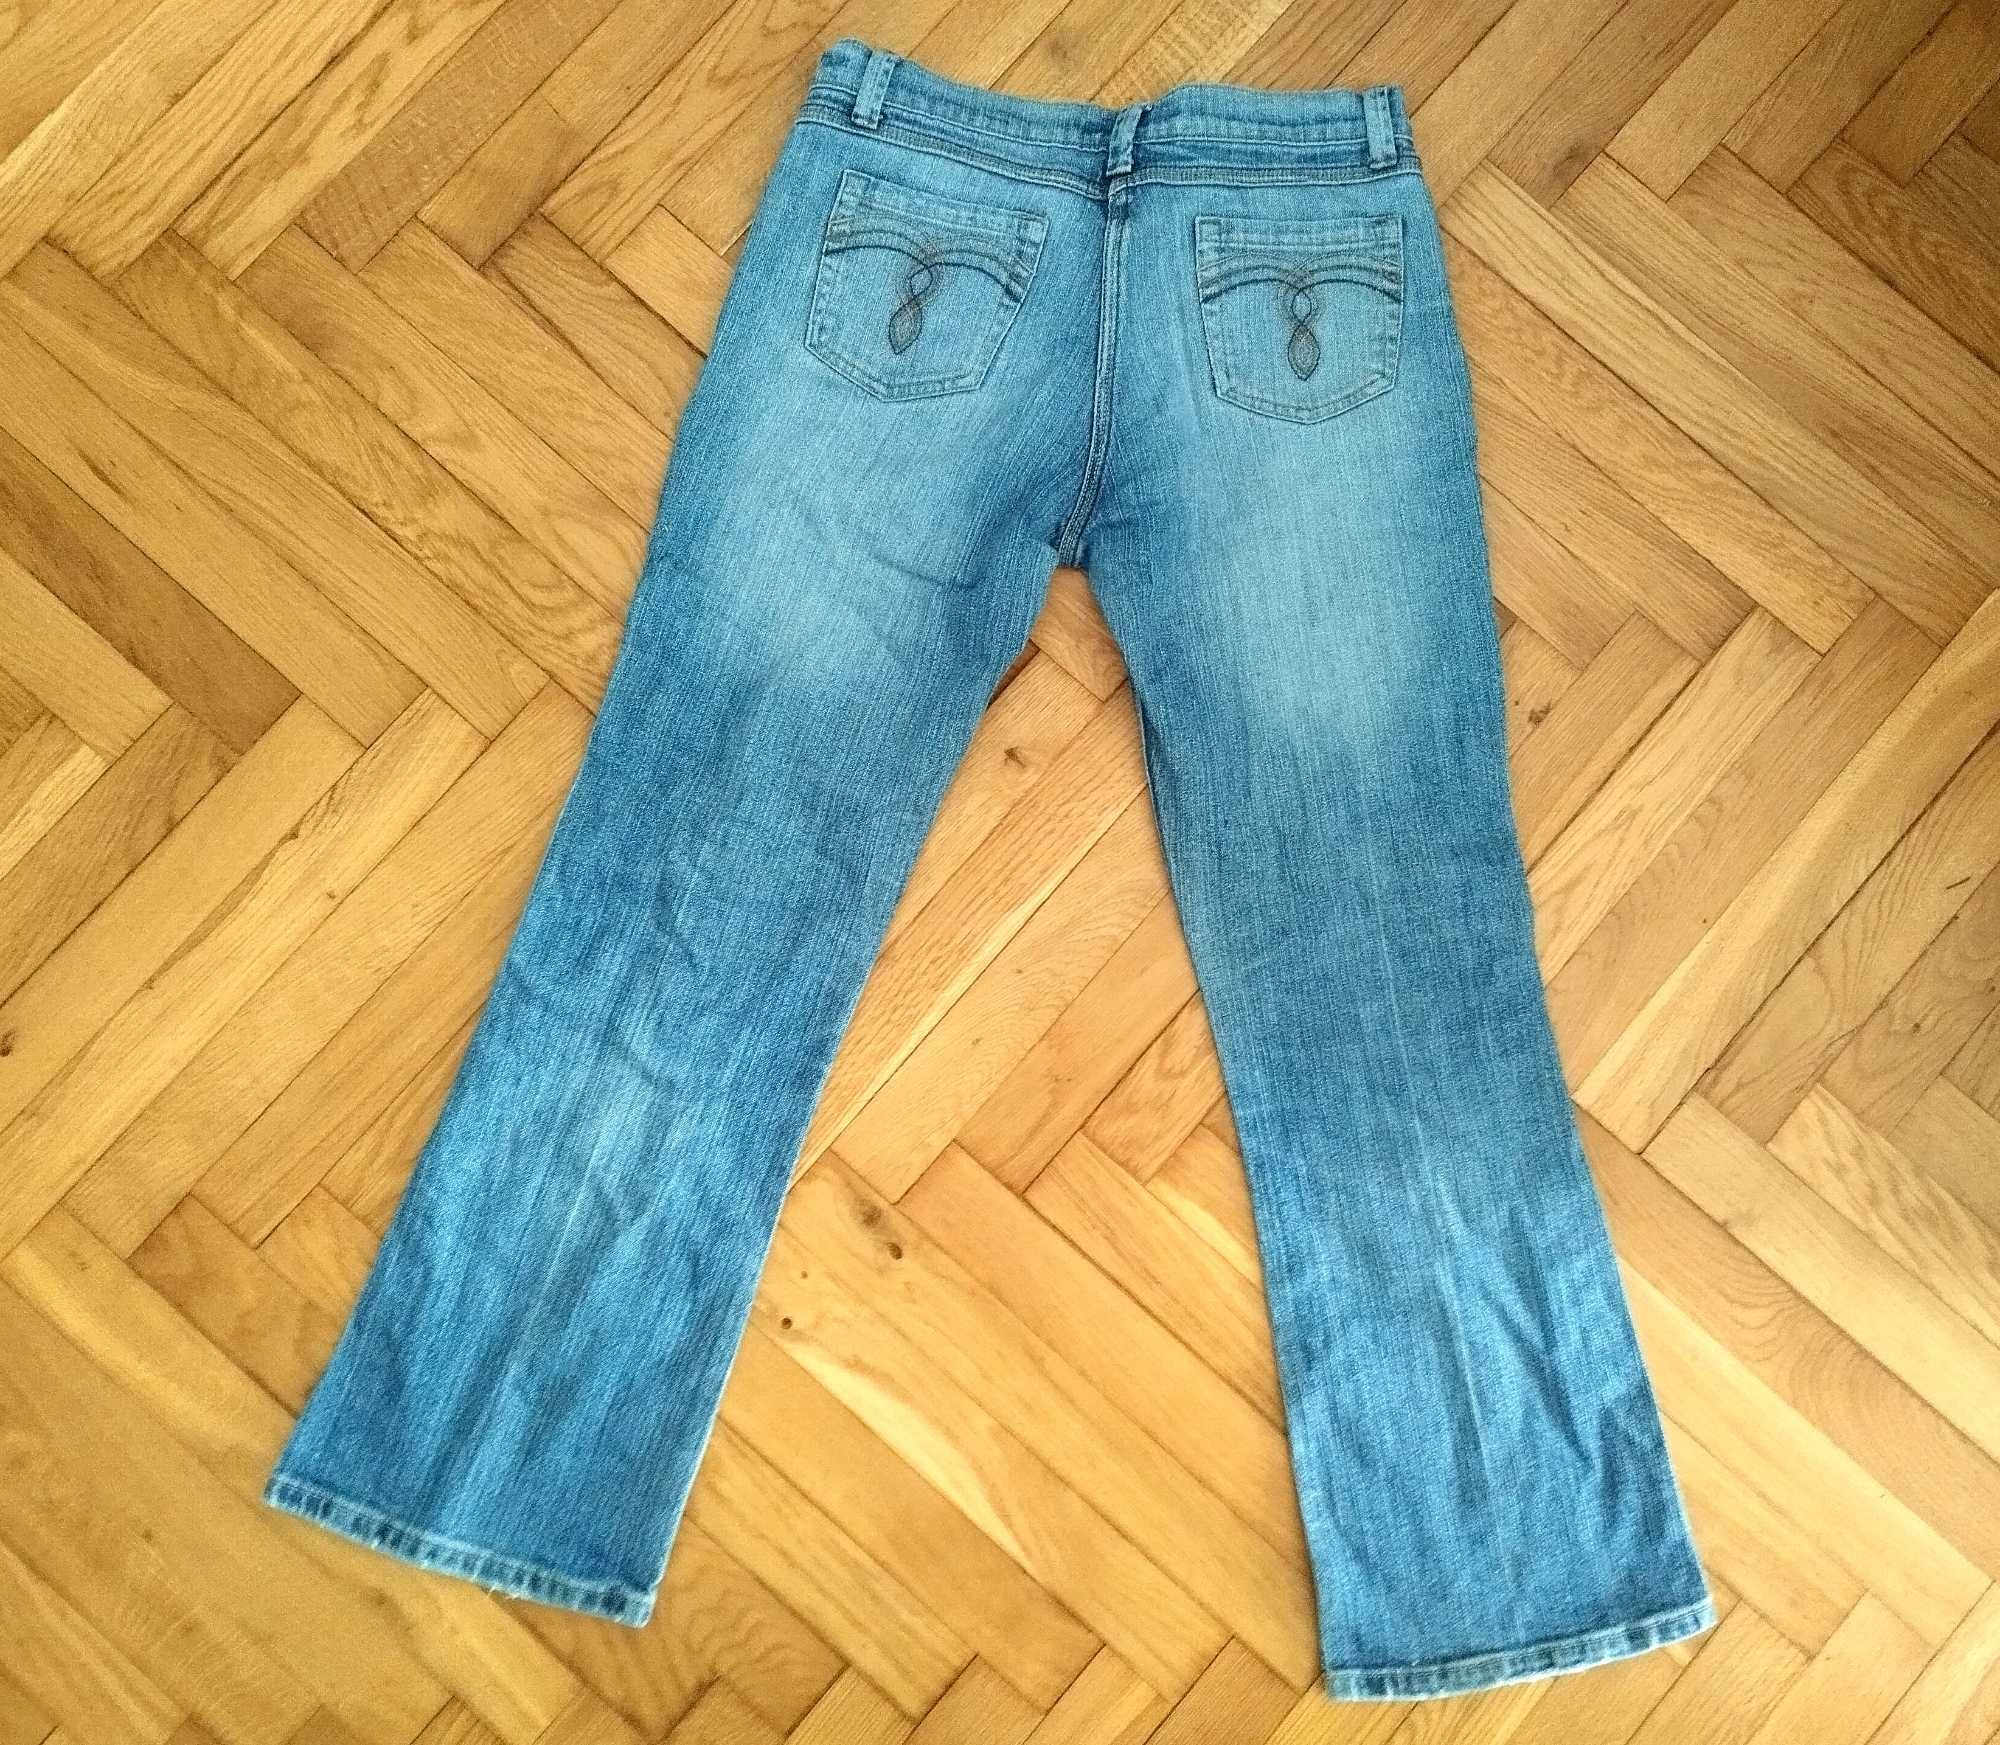 Spodnie damskie Dorothy Perkins, roz. 36/38 dżinsowe jeansy niebieskie